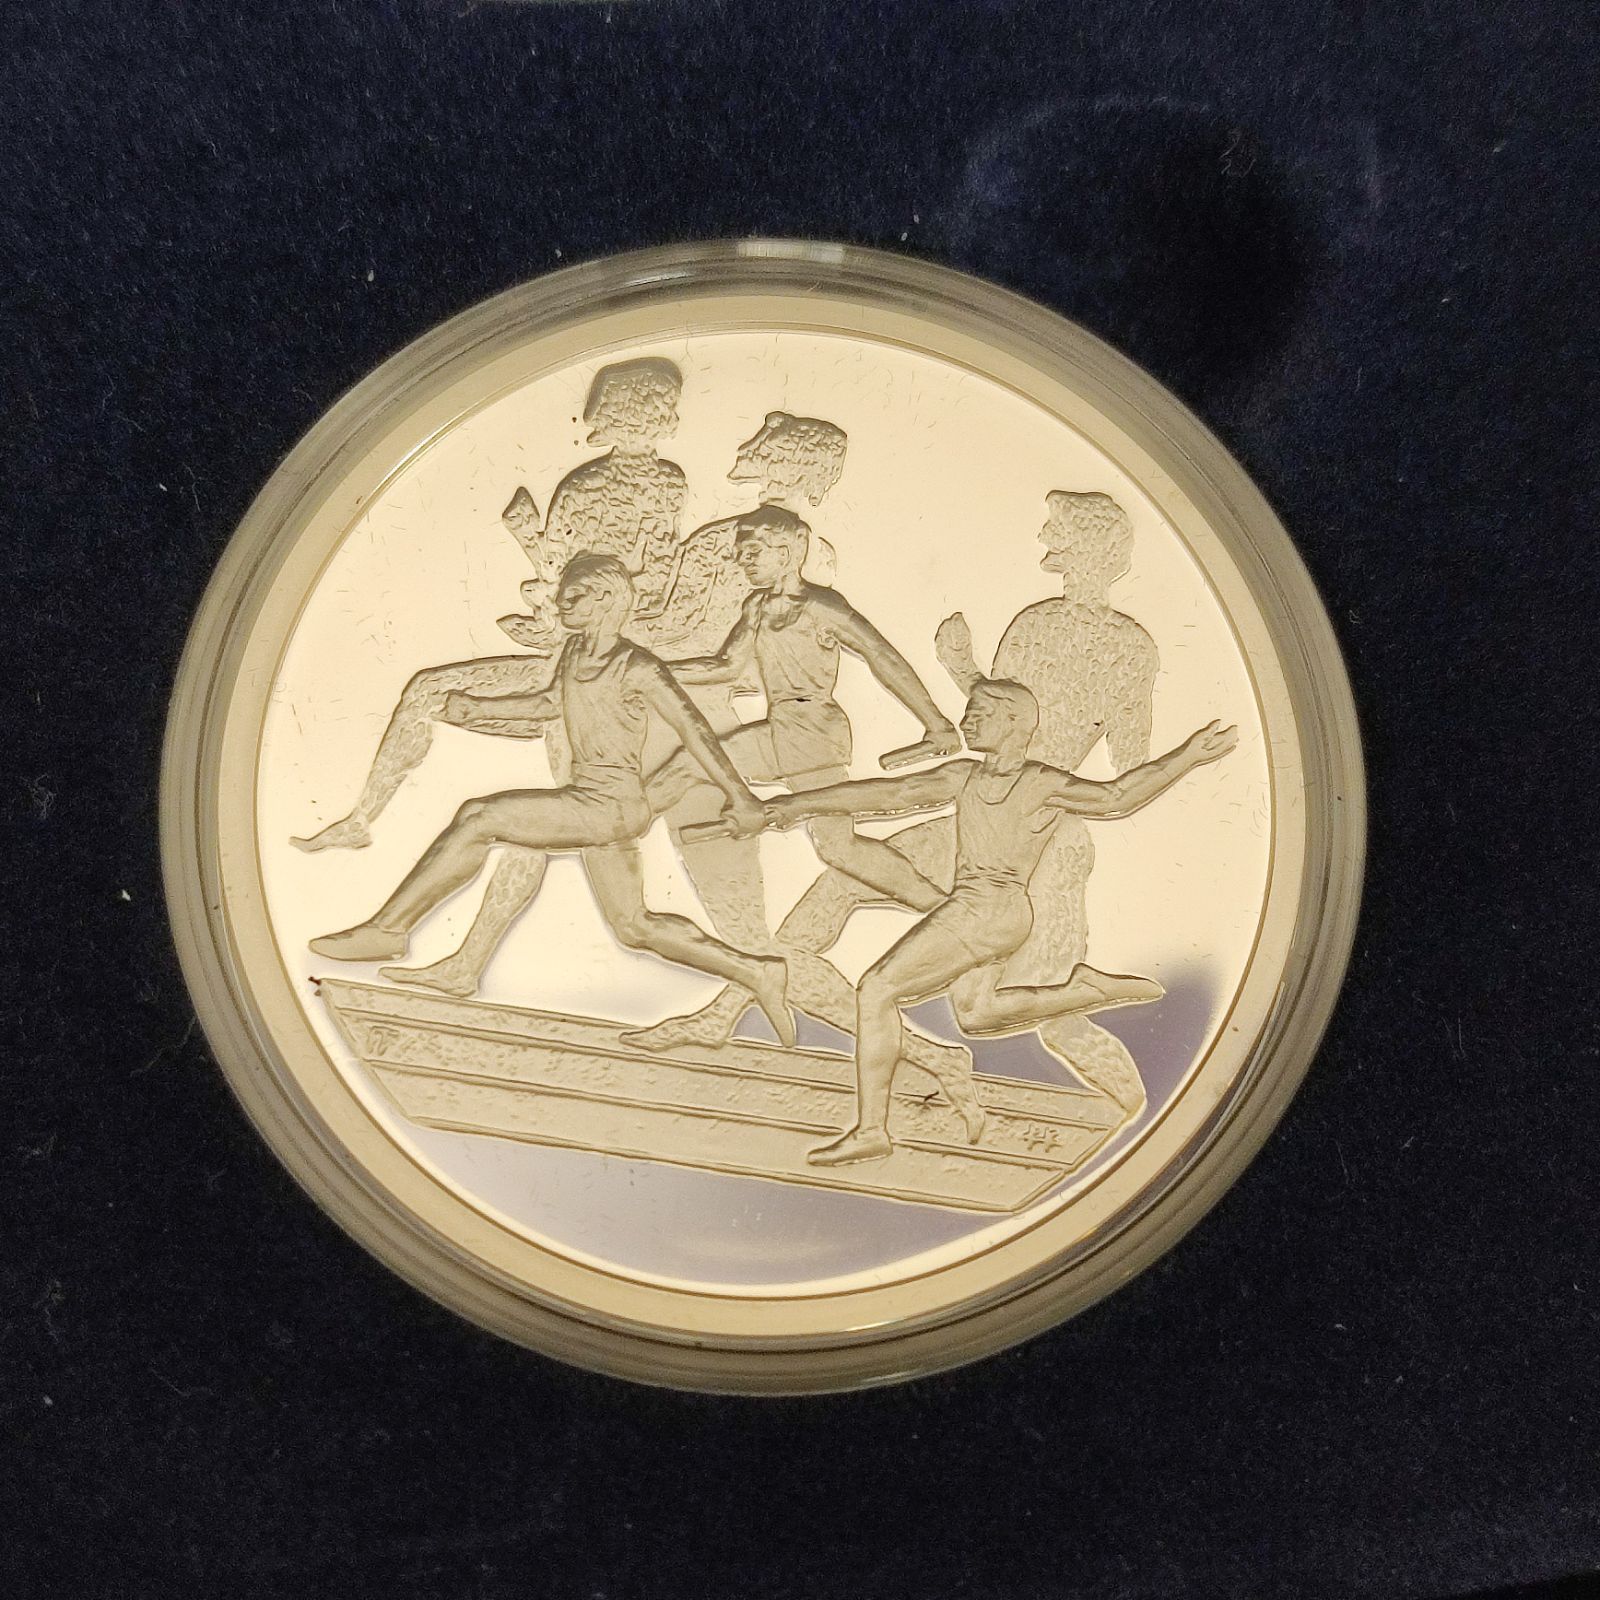 アテネ2004 オリンピック 競技大会公式記念コイン 銀貨6枚セット 第1次デザイン 925シルバー 額面10ユーロ